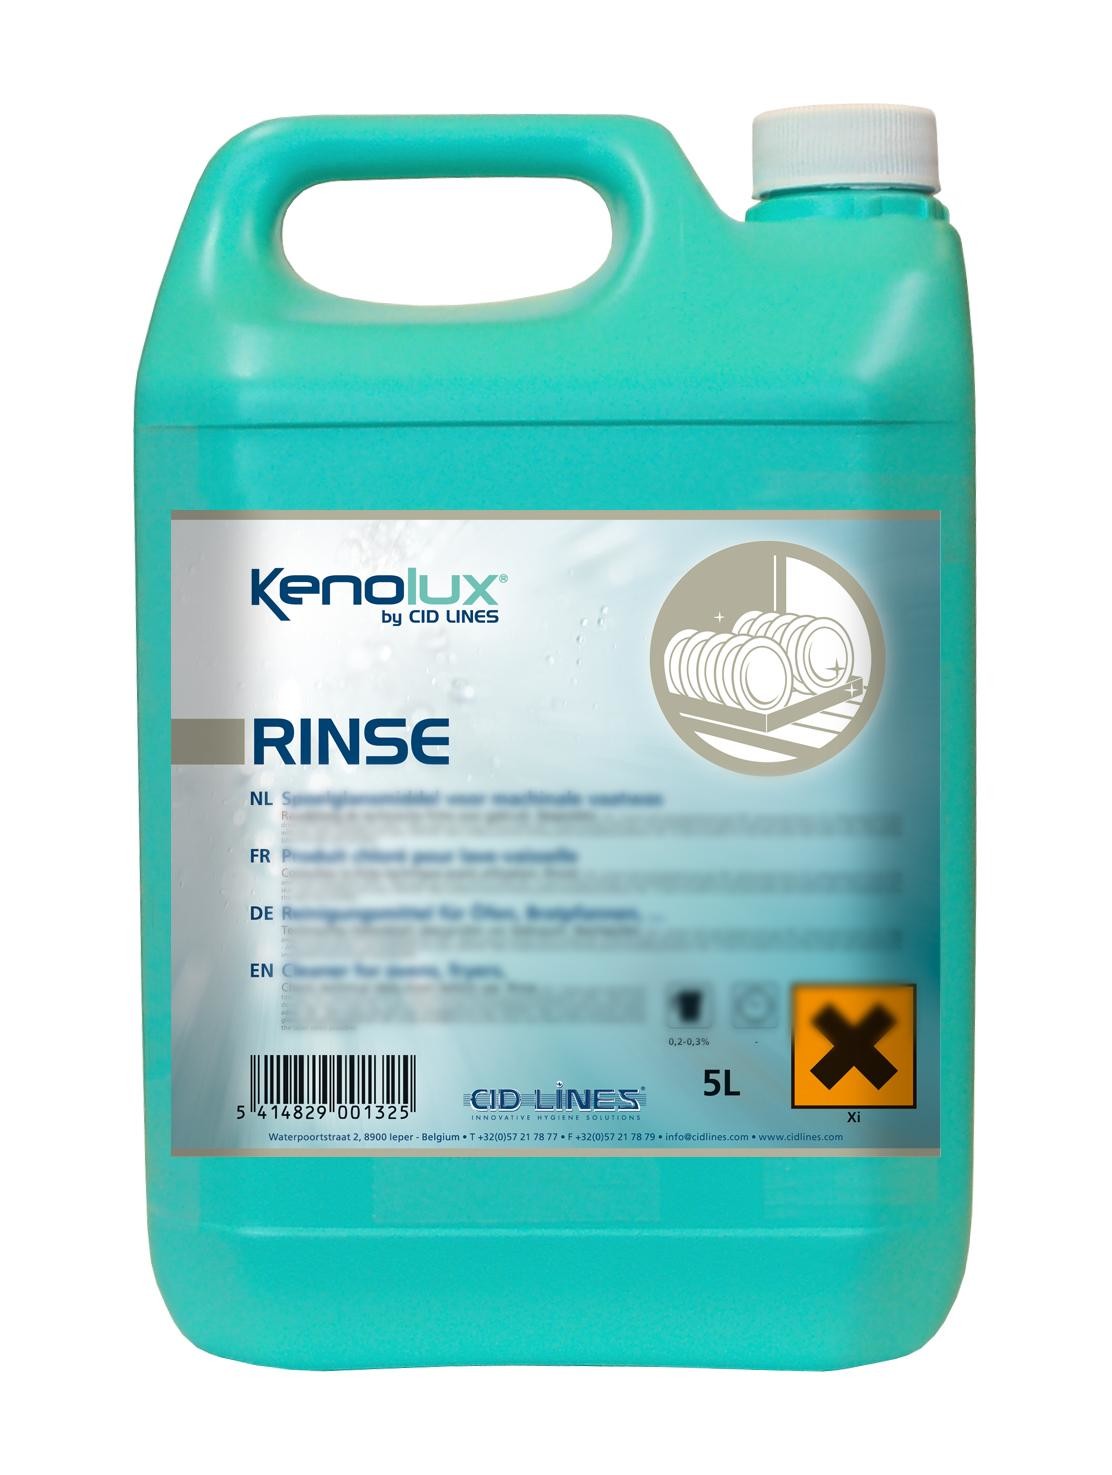 Kenolux Rinse 5L liquide rinçage pour les lave-vaisselles Cid Lines